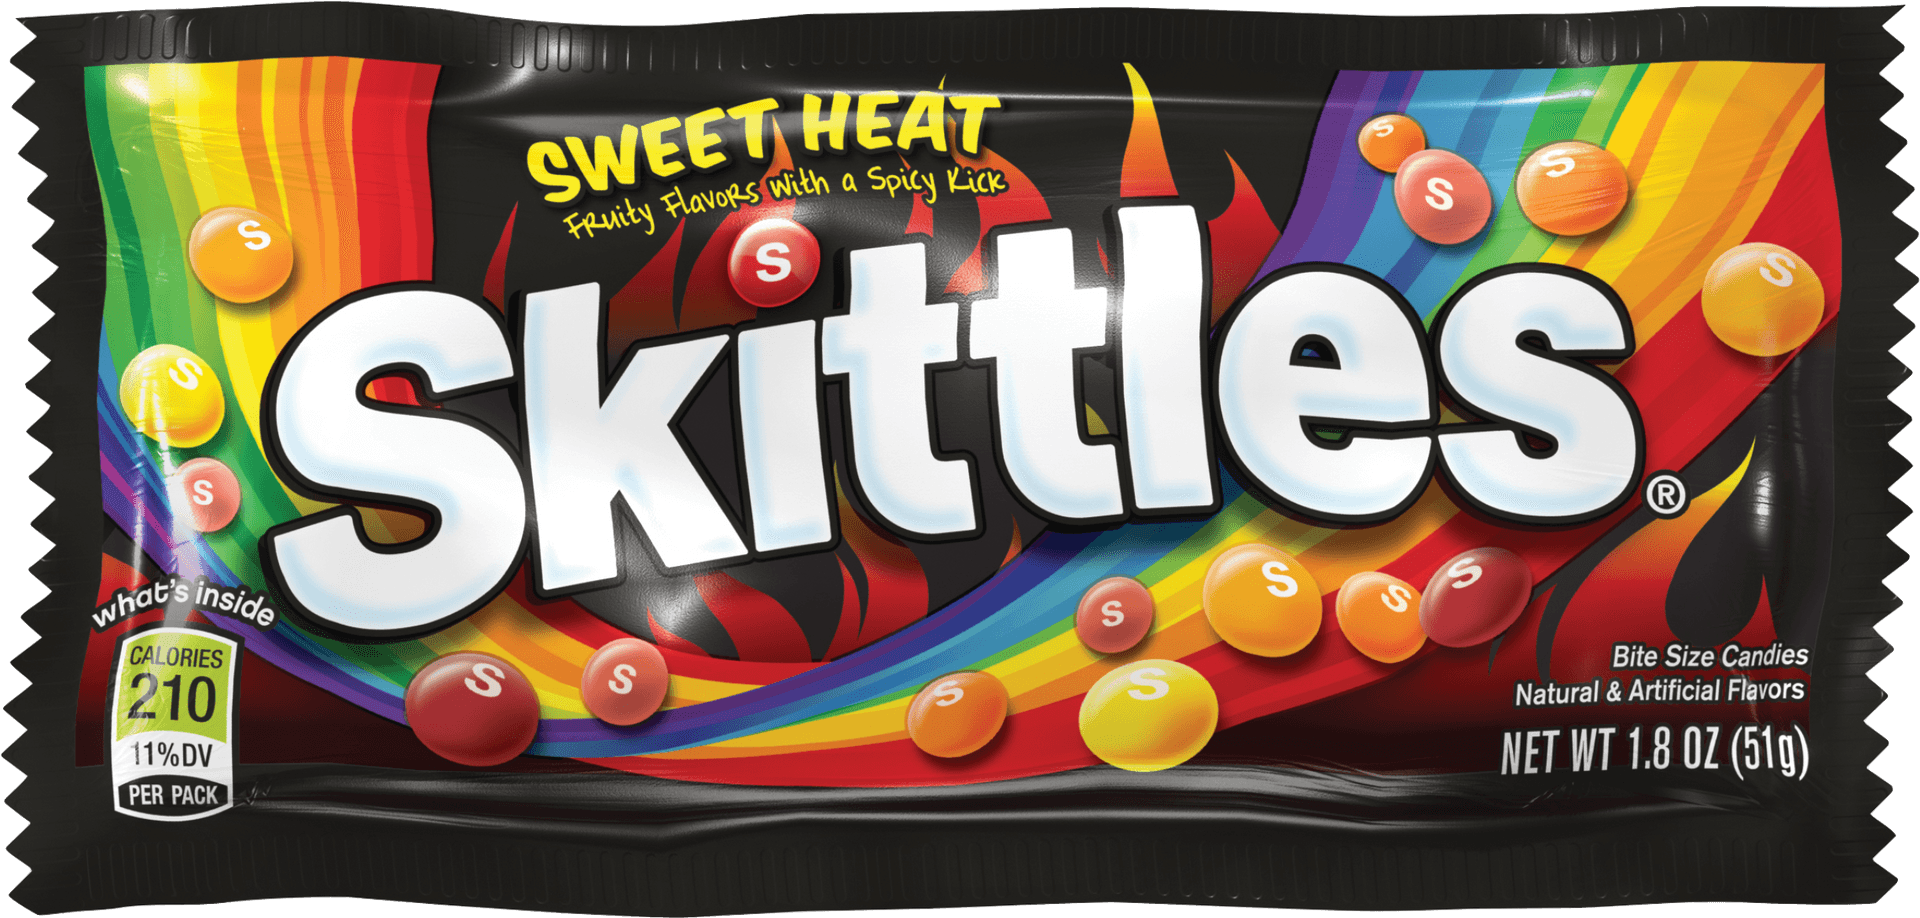 Skittles Sweet Heat Package PNG